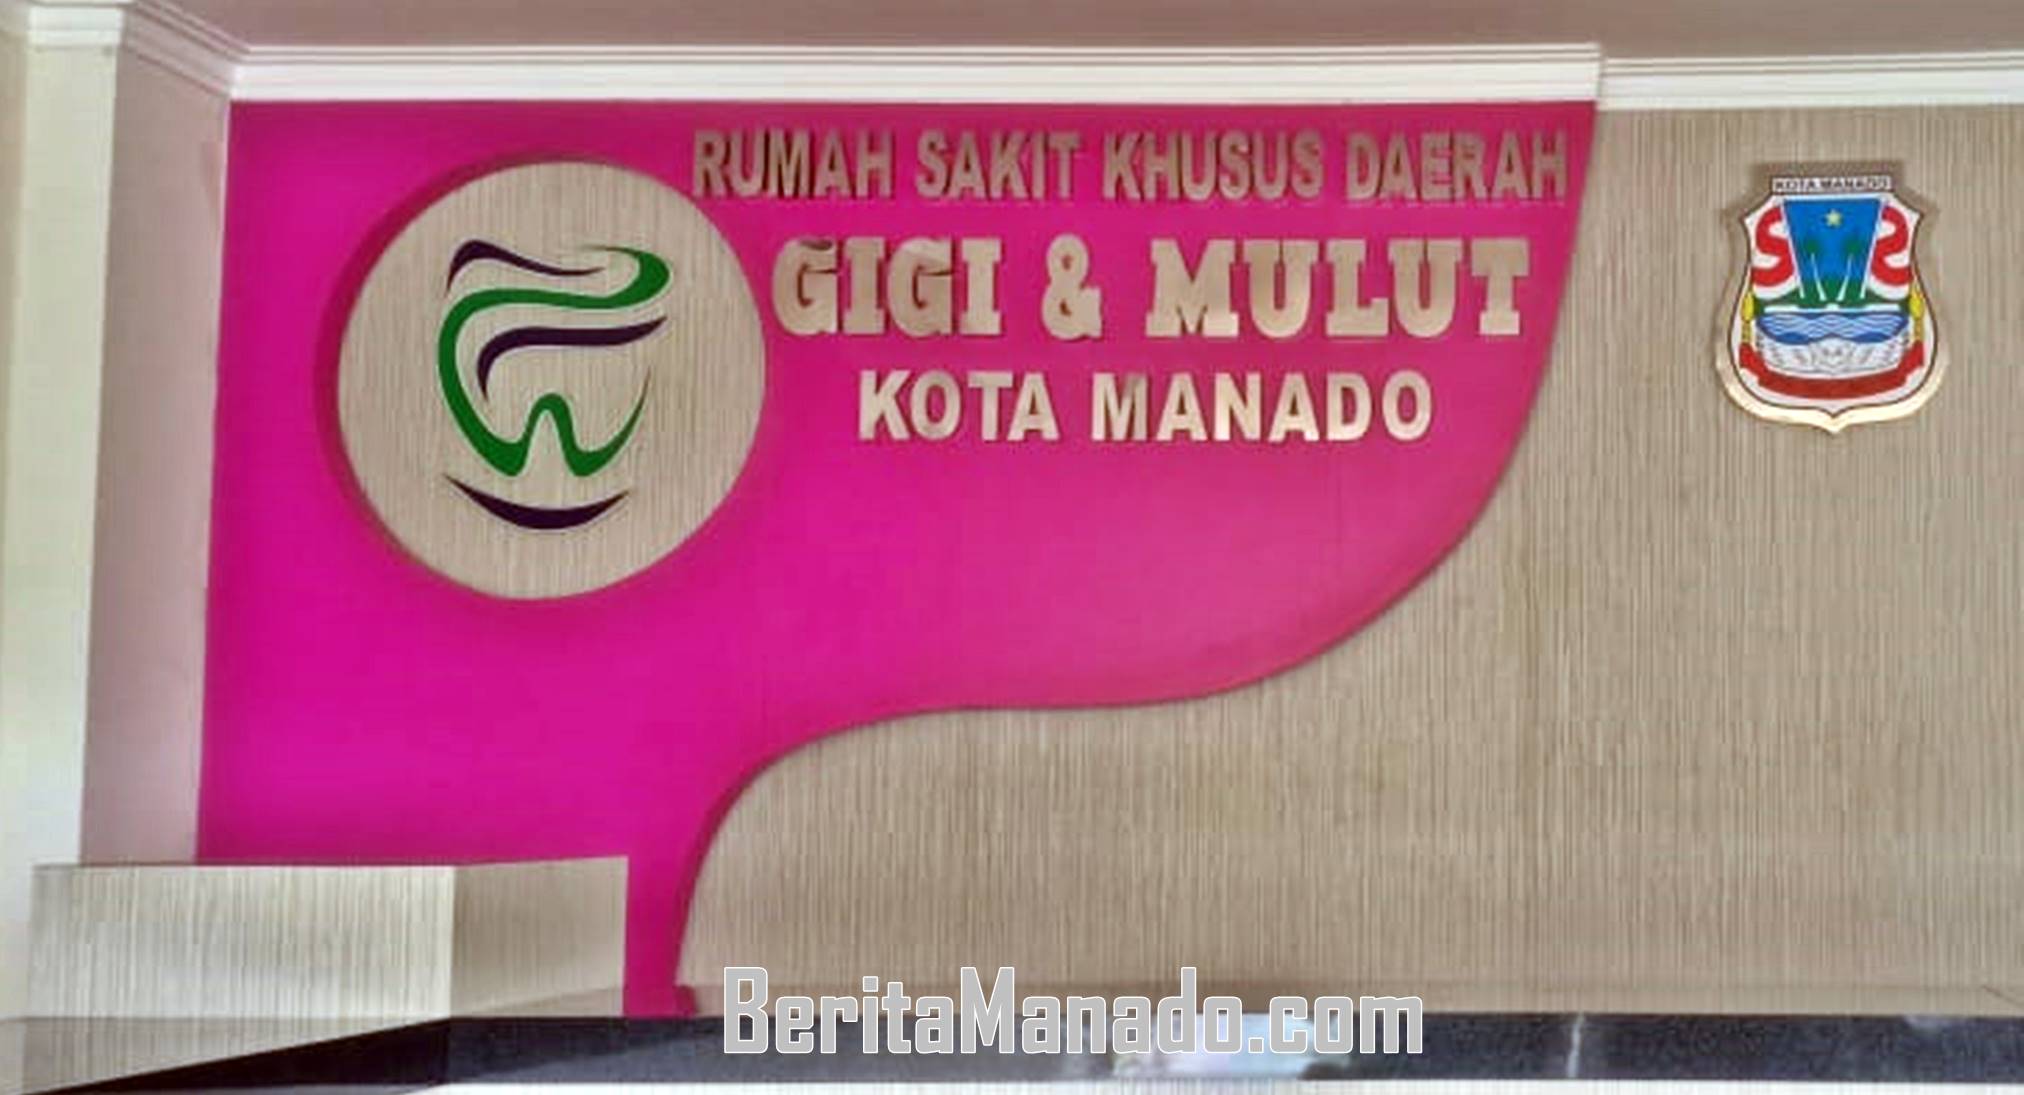 Rumah Sakit Khusus Daerah Gigi dan Mulut Kota Manado